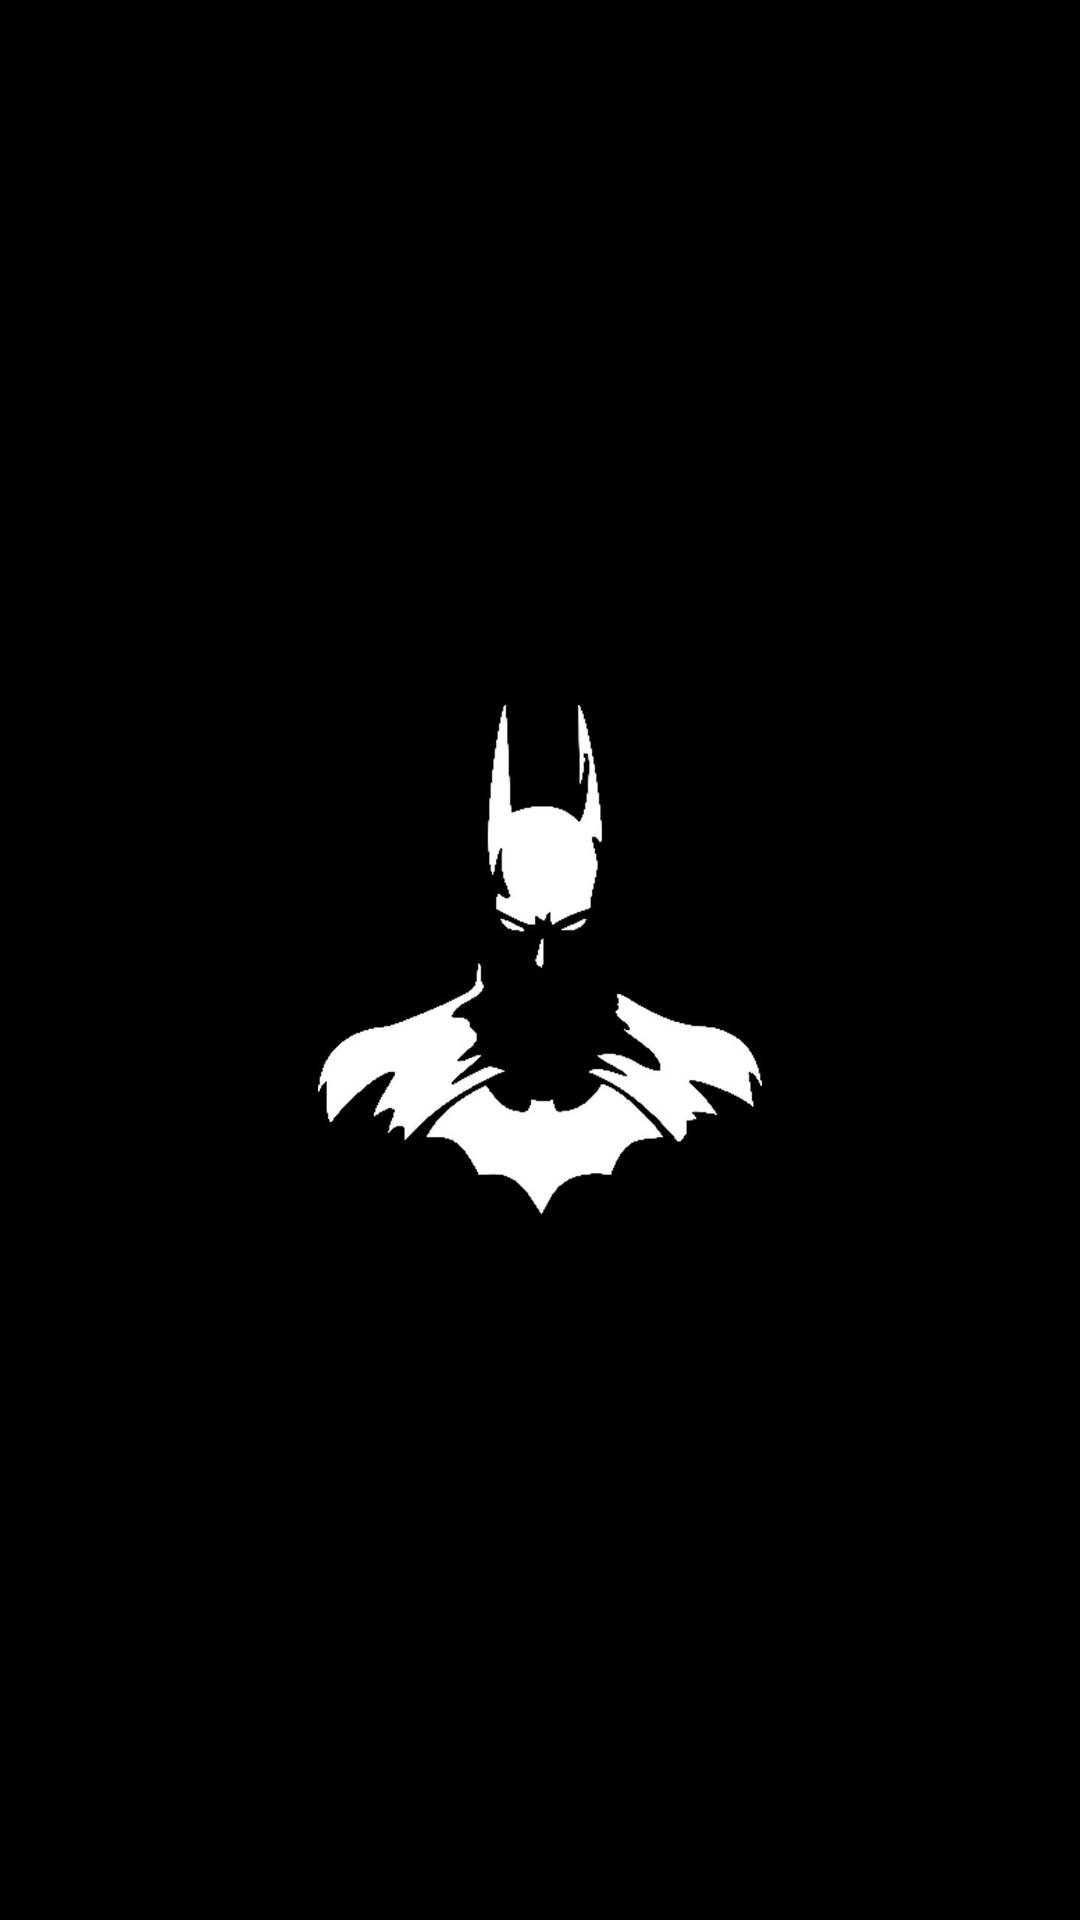 Batmanoscuro En Blanco Y Negro Para Iphone. Fondo de pantalla